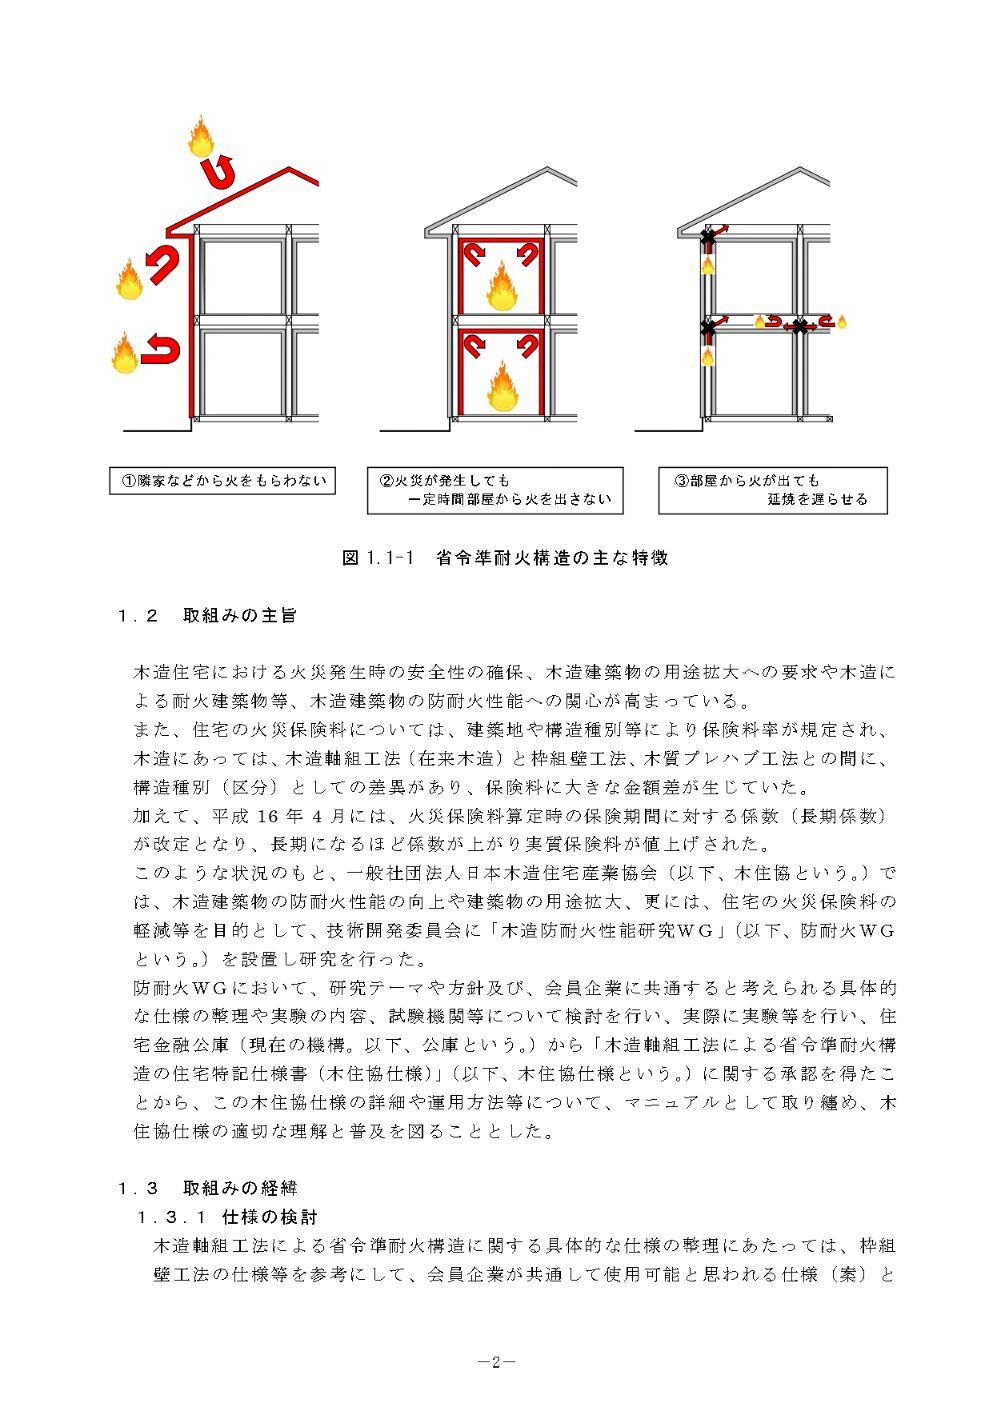 耐火 省令 構造 準 省令準耐火構造を詳しく解説します